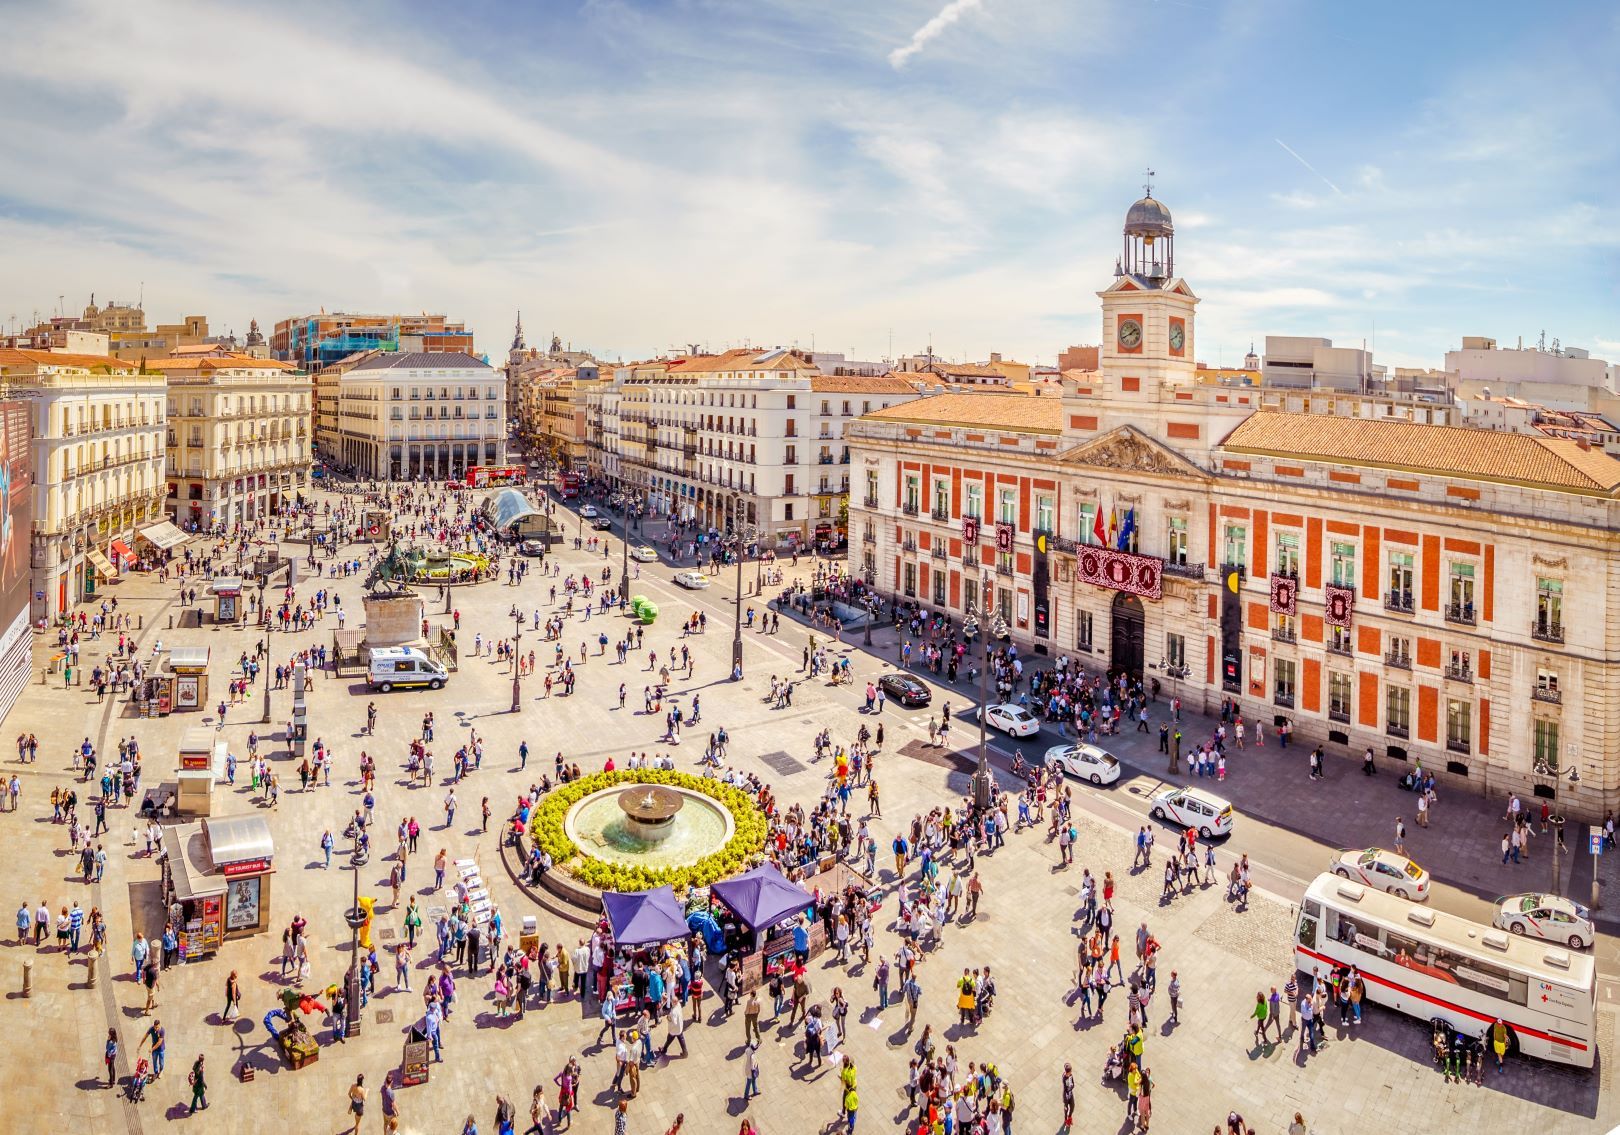 Madrid_Puerta_del_sol